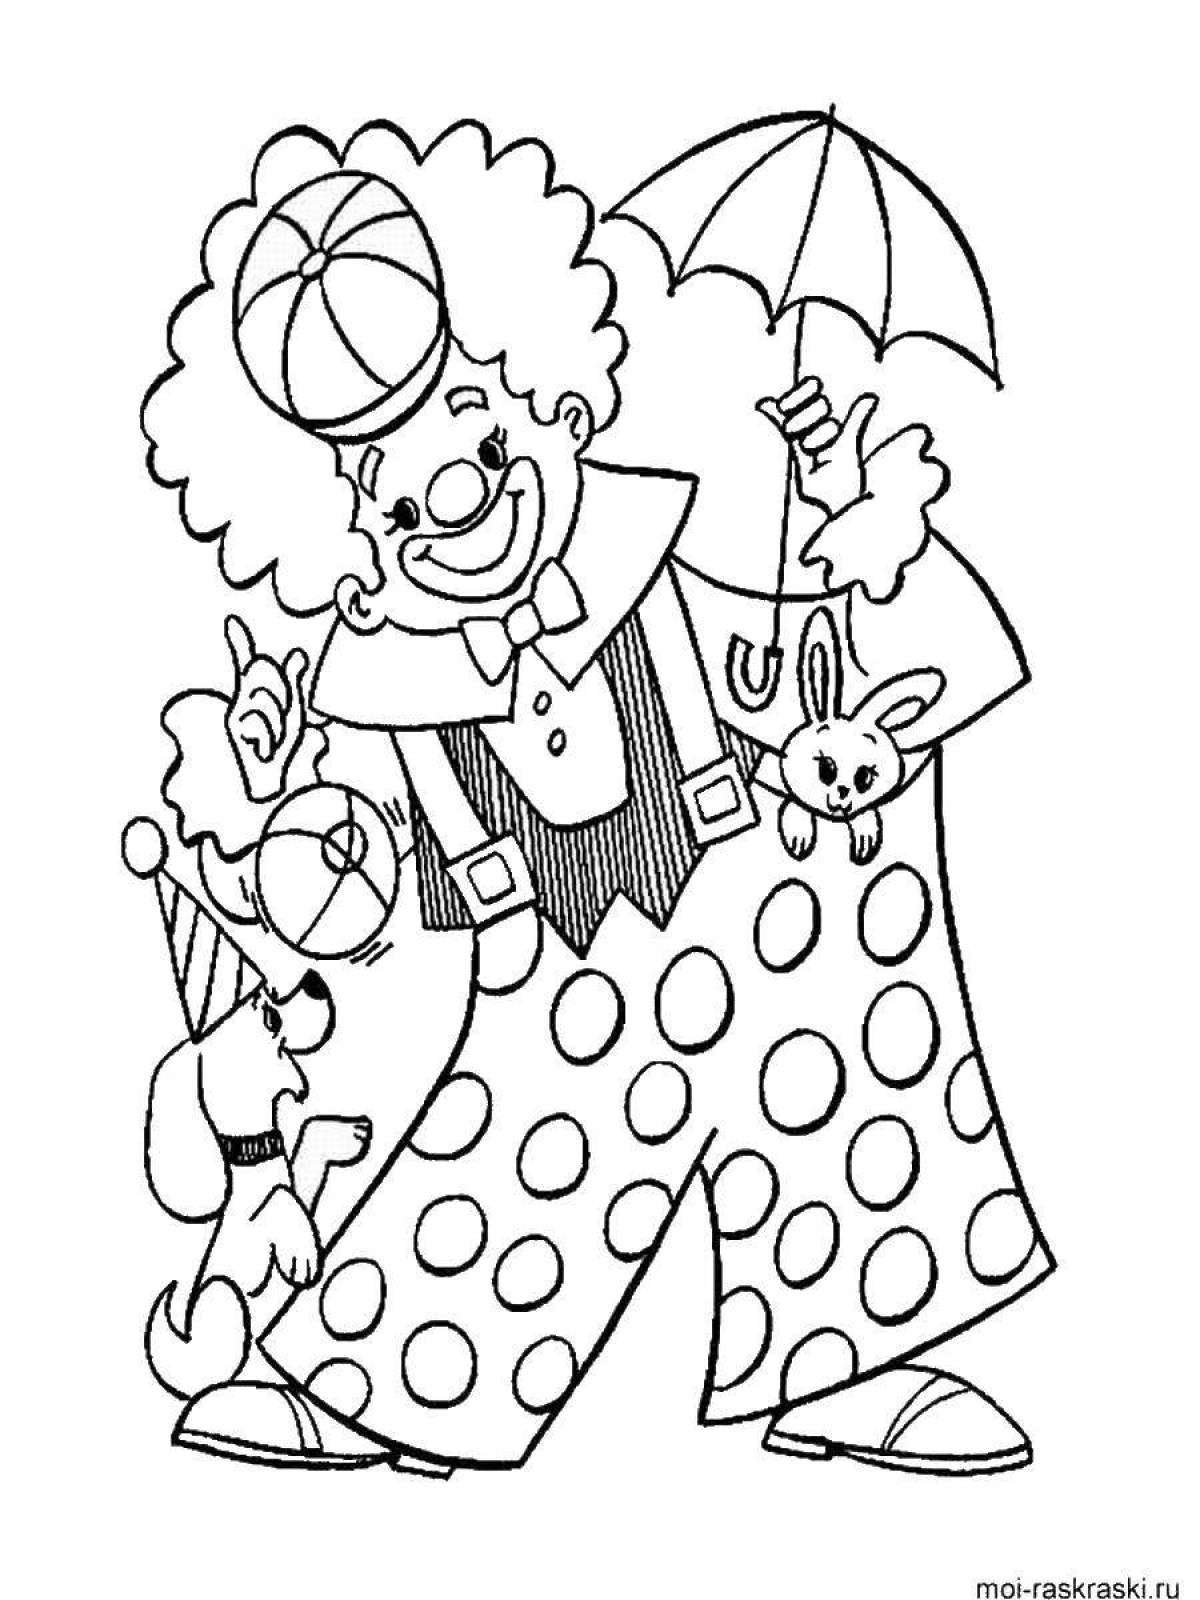 Сияющий клоун с воздушными шарами